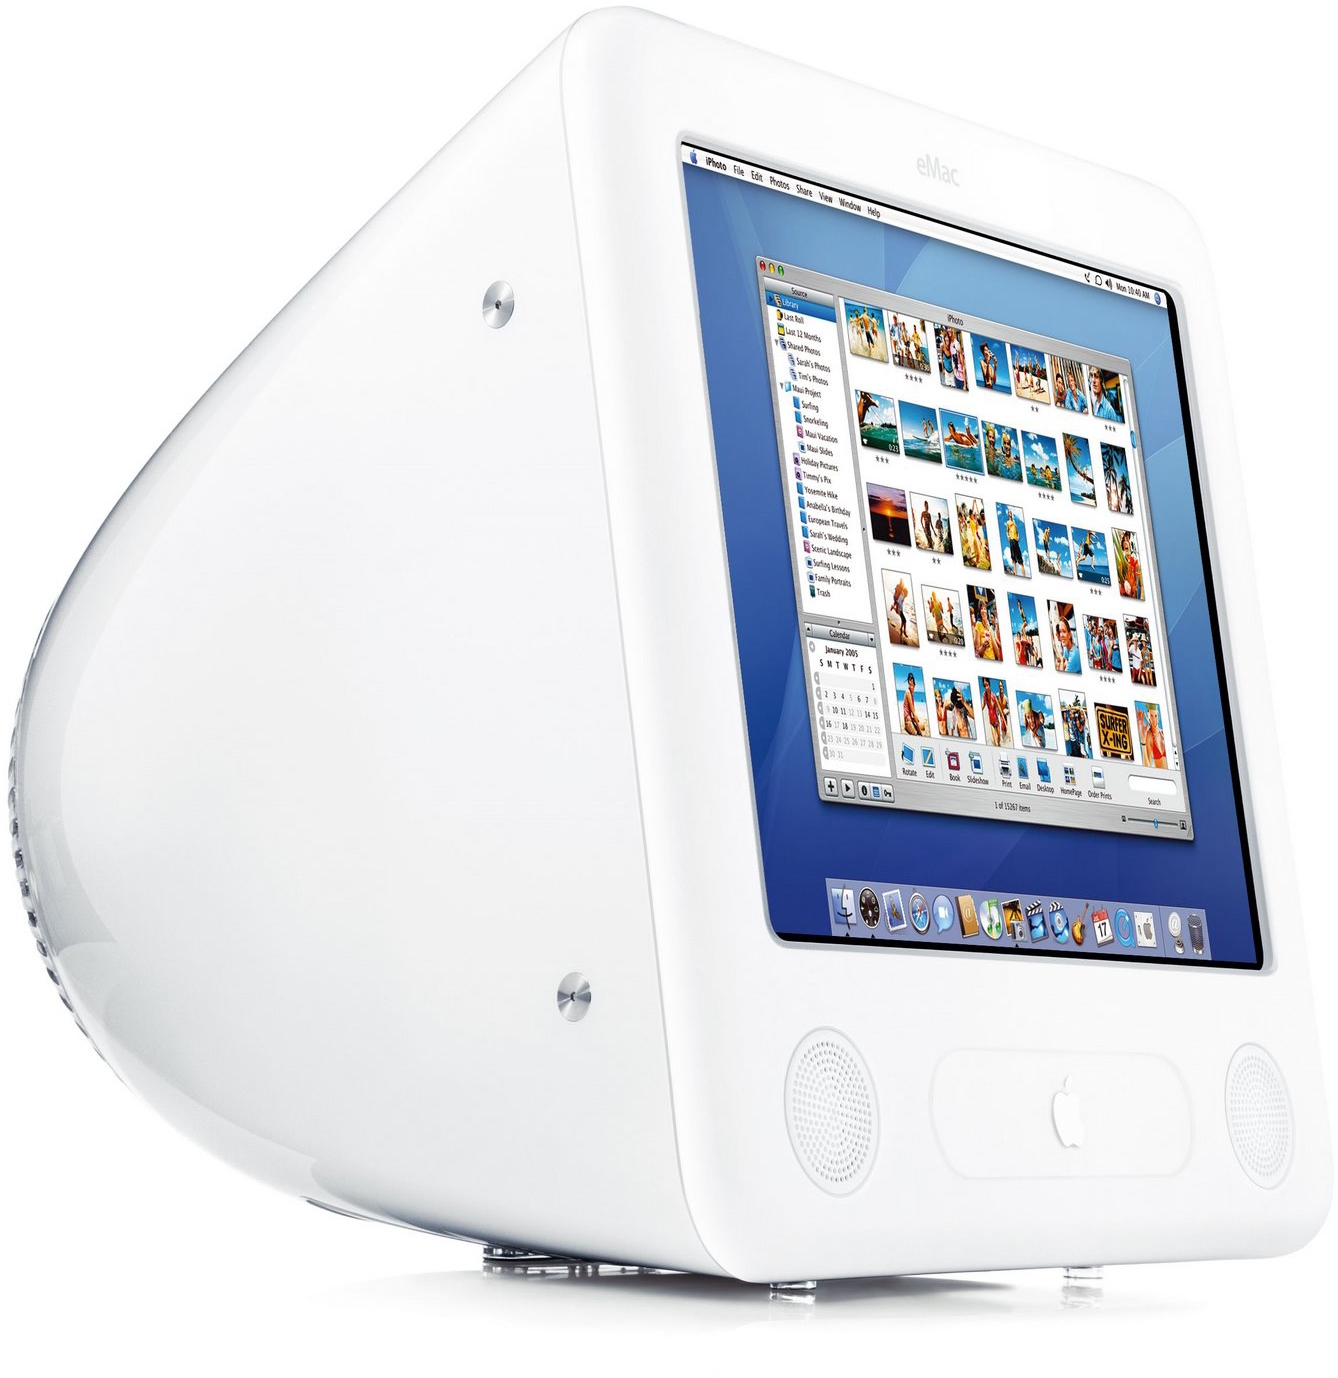 تقوم Apple بتحديث قائمة طرازات Mac الكلاسيكية و / أو القديمة